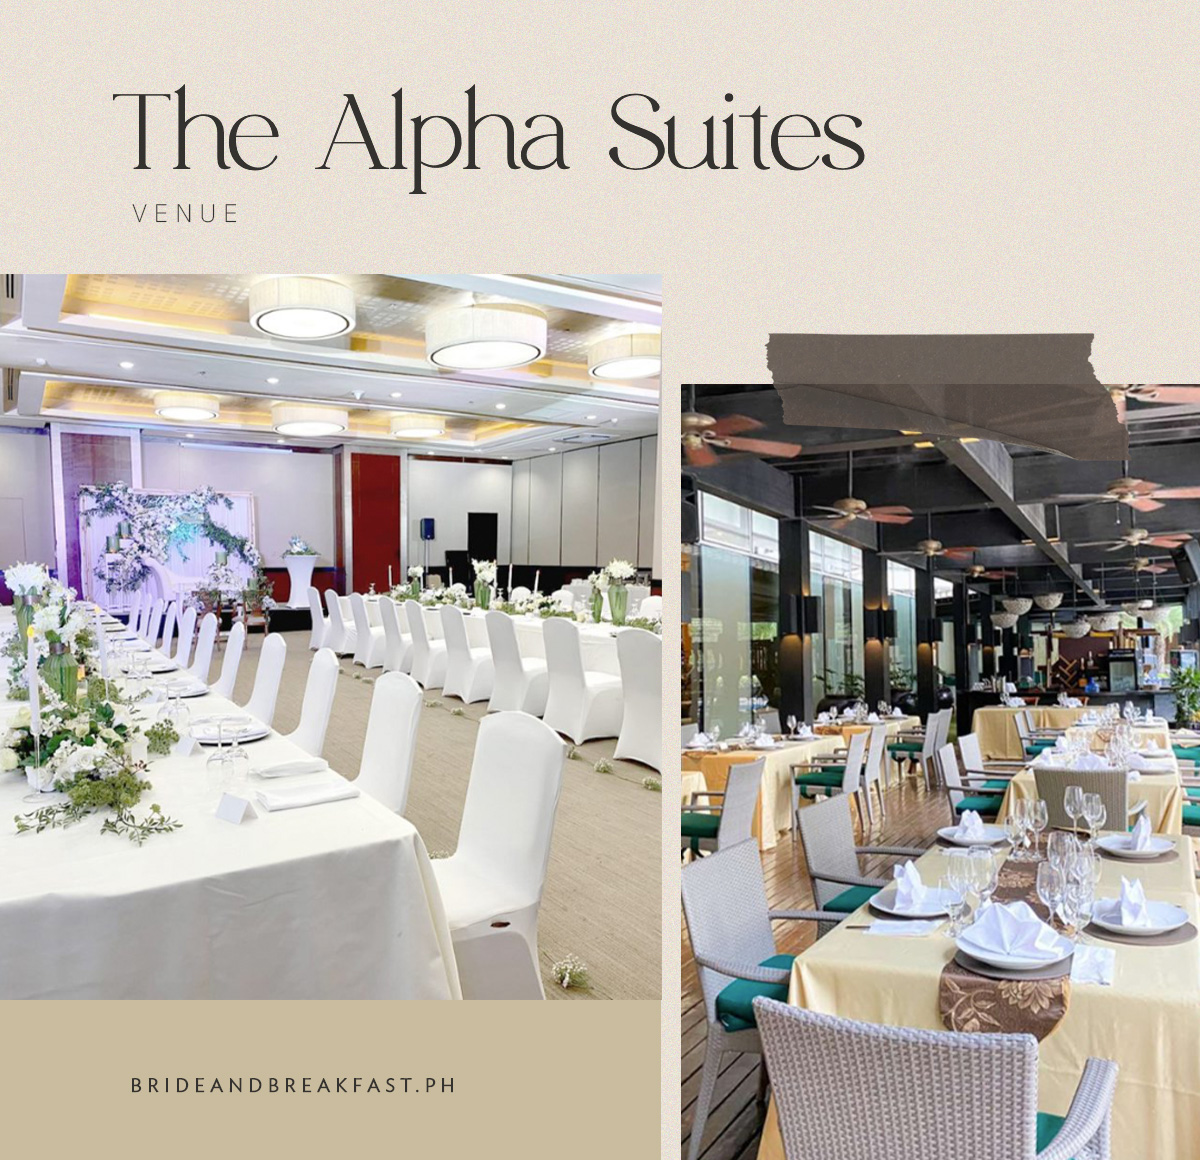 The Alpha Suites